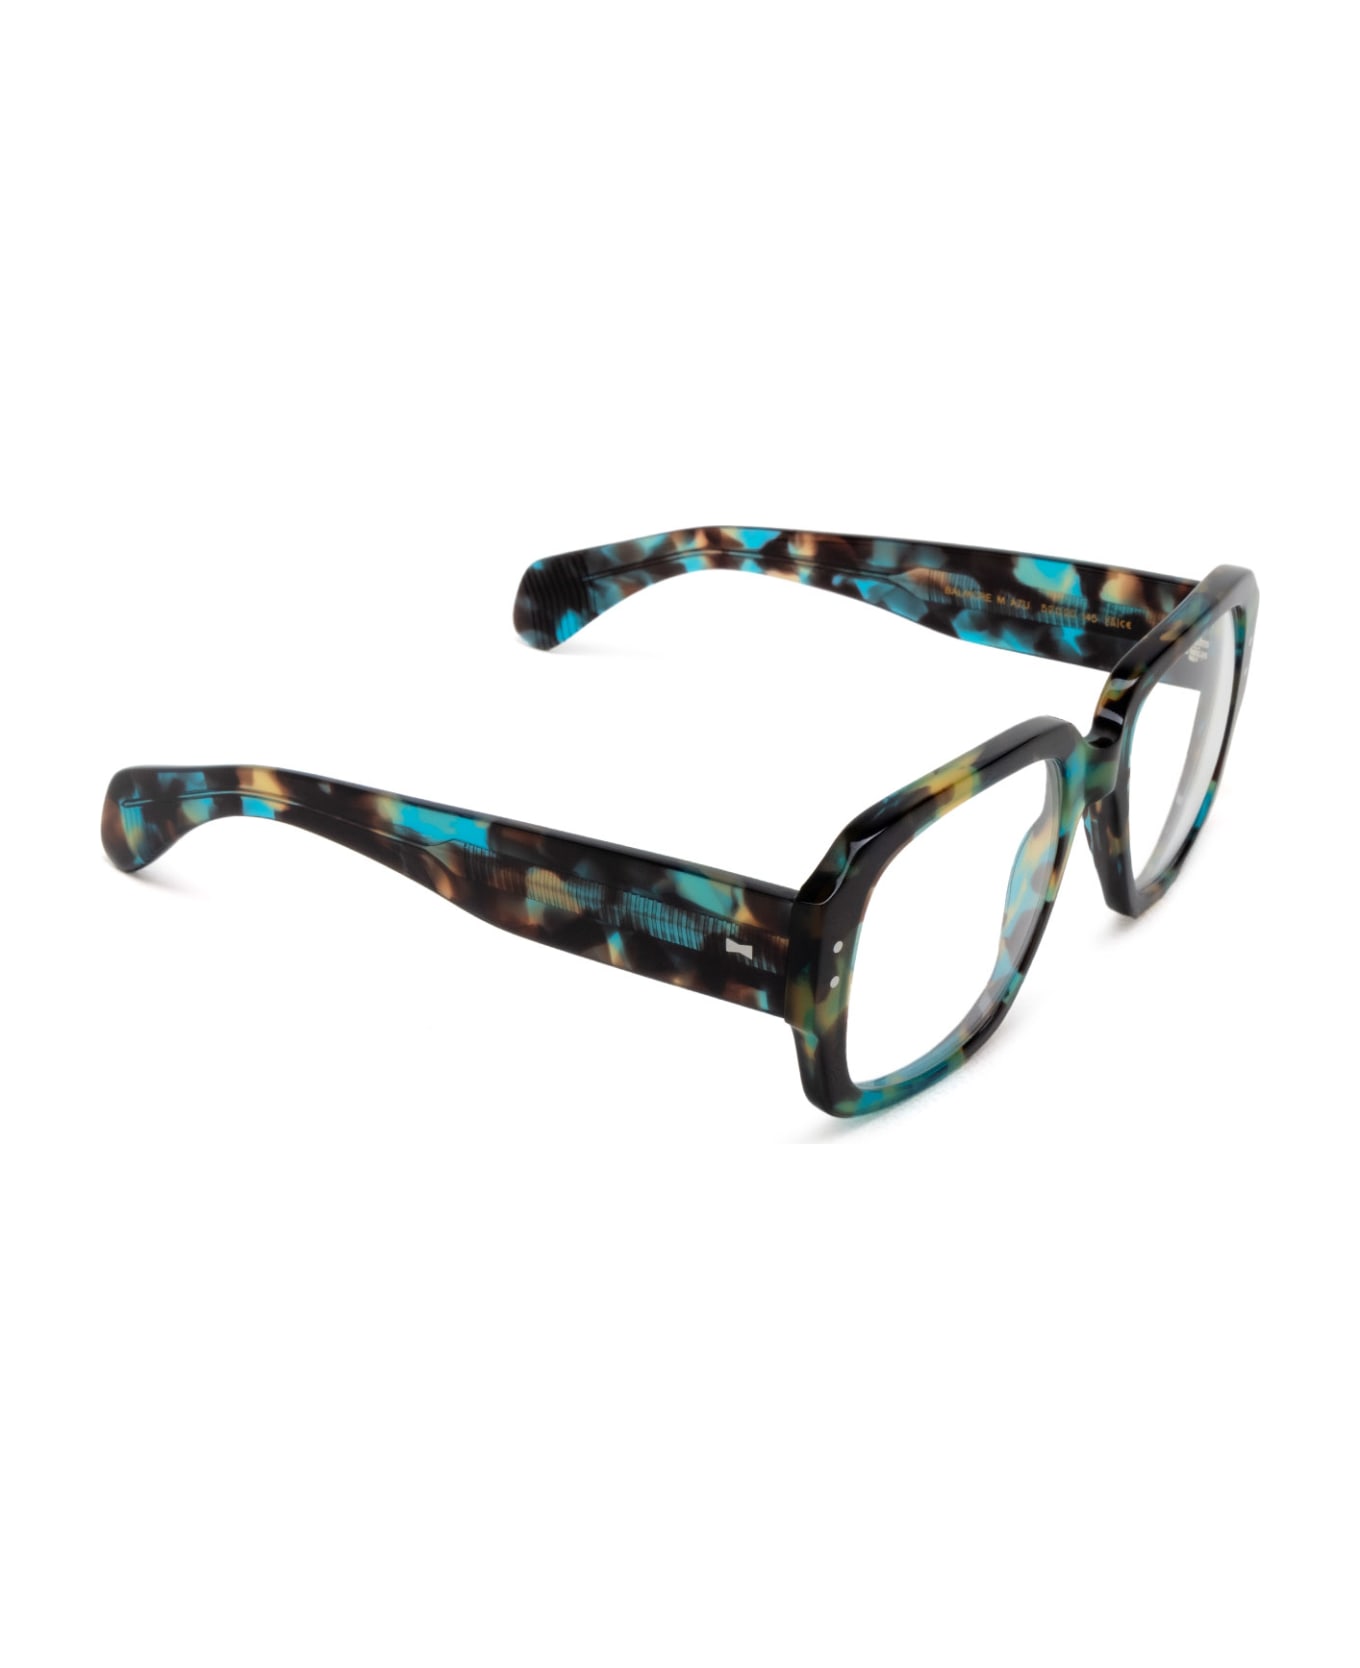 Cubitts Balmore Azure Turtle Glasses - Azure Turtle アイウェア